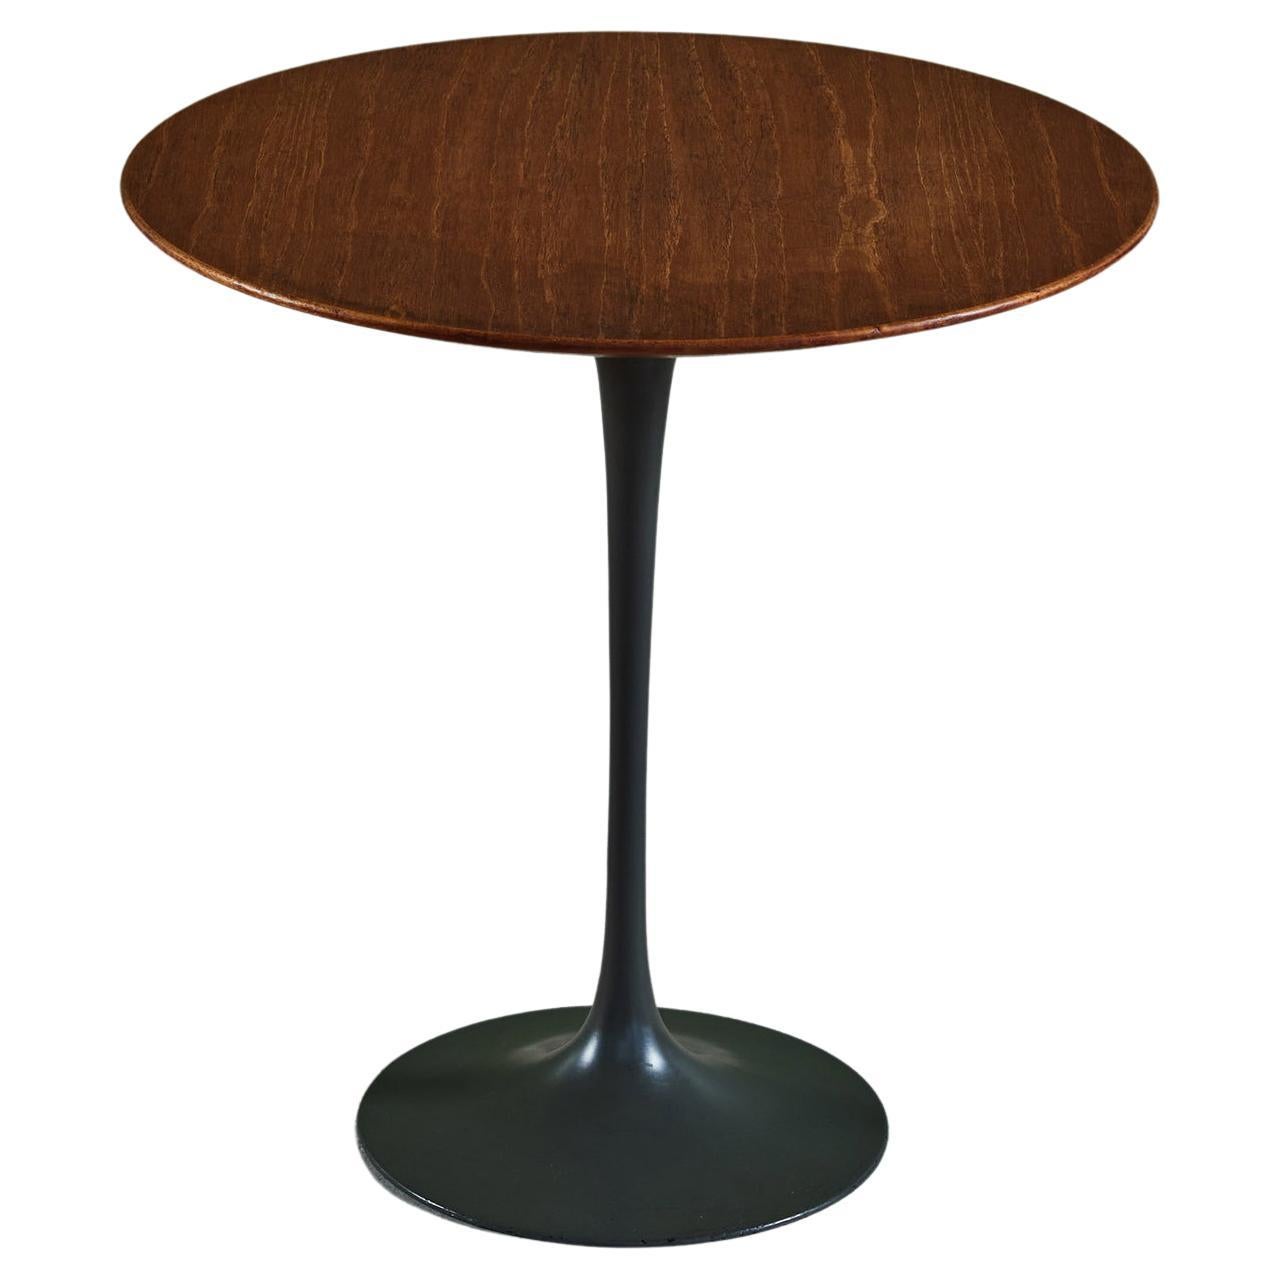 Eero Saarinen Tulip Side Table for Knoll